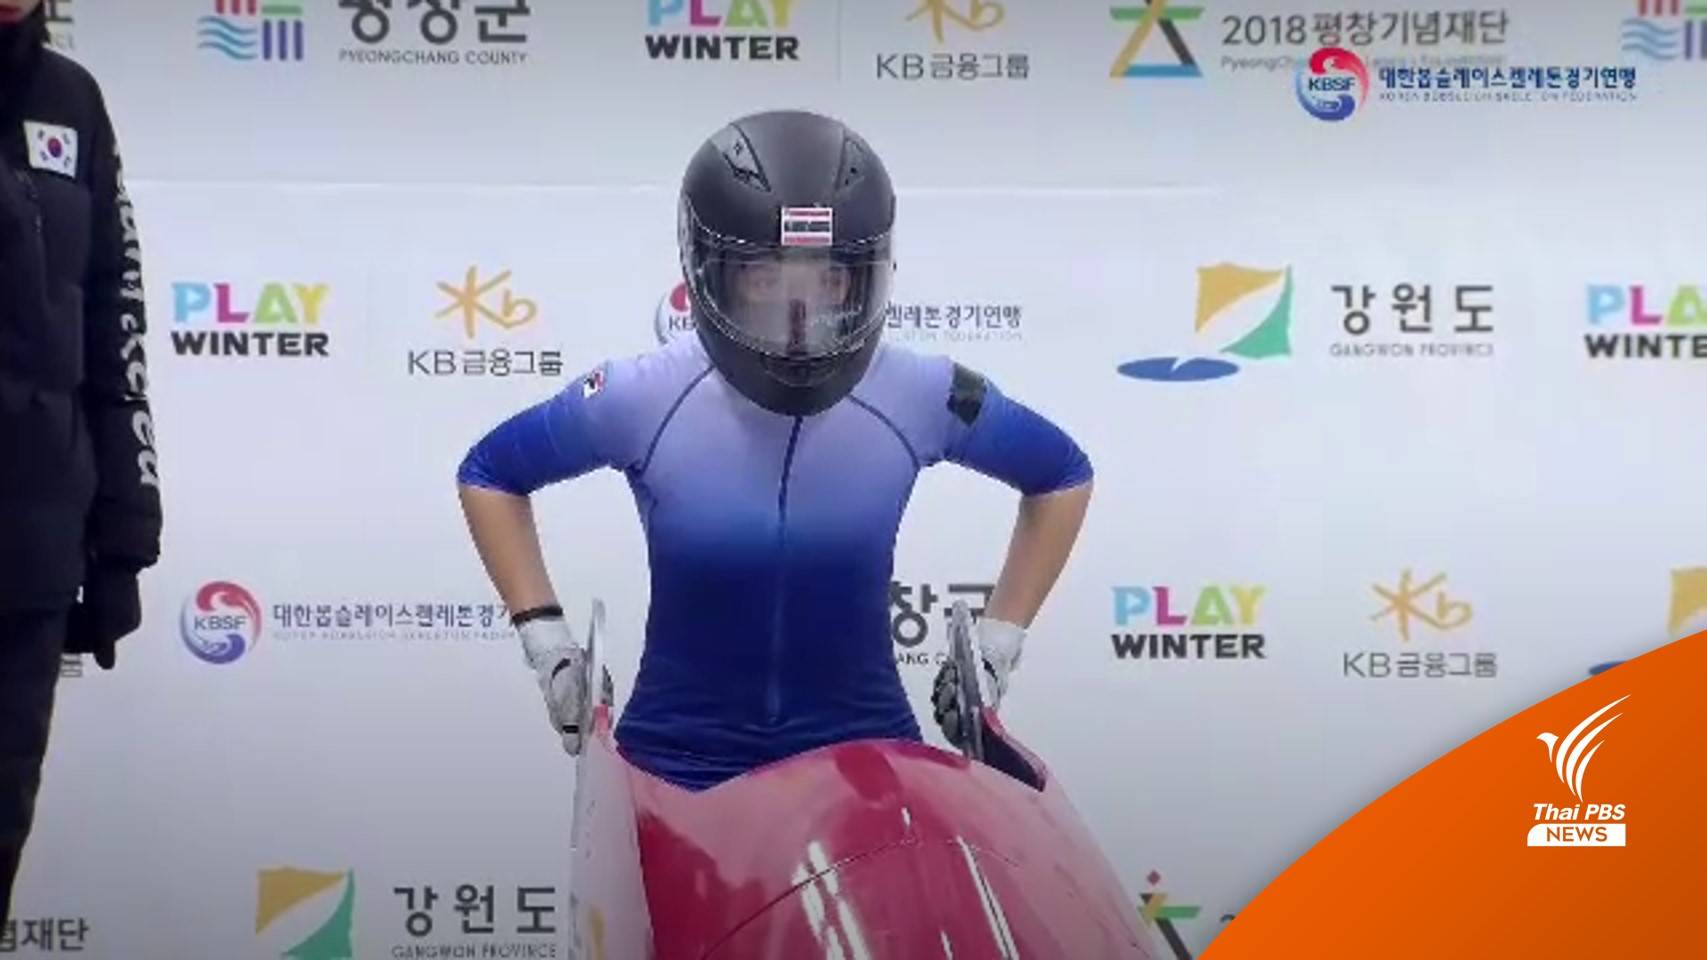 สุดเจ๋ง! เด็กไทยคว้า "รองแชมป์" กีฬาเลื่อนน้ำแข็งที่เกาหลีใต้